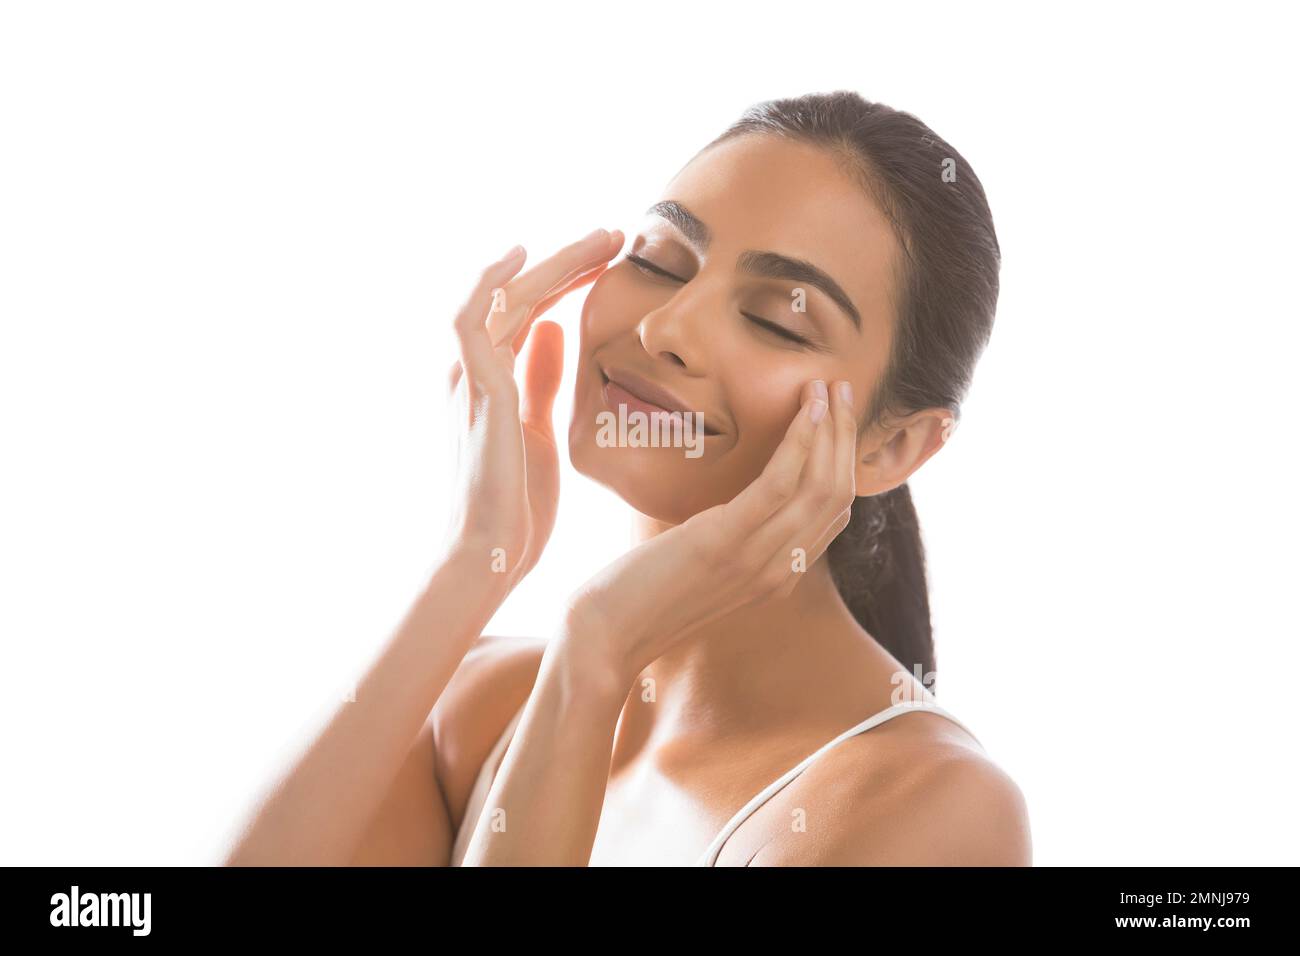 Retrato de mujer joven sonriente que hace el masaje de la cara Foto de stock